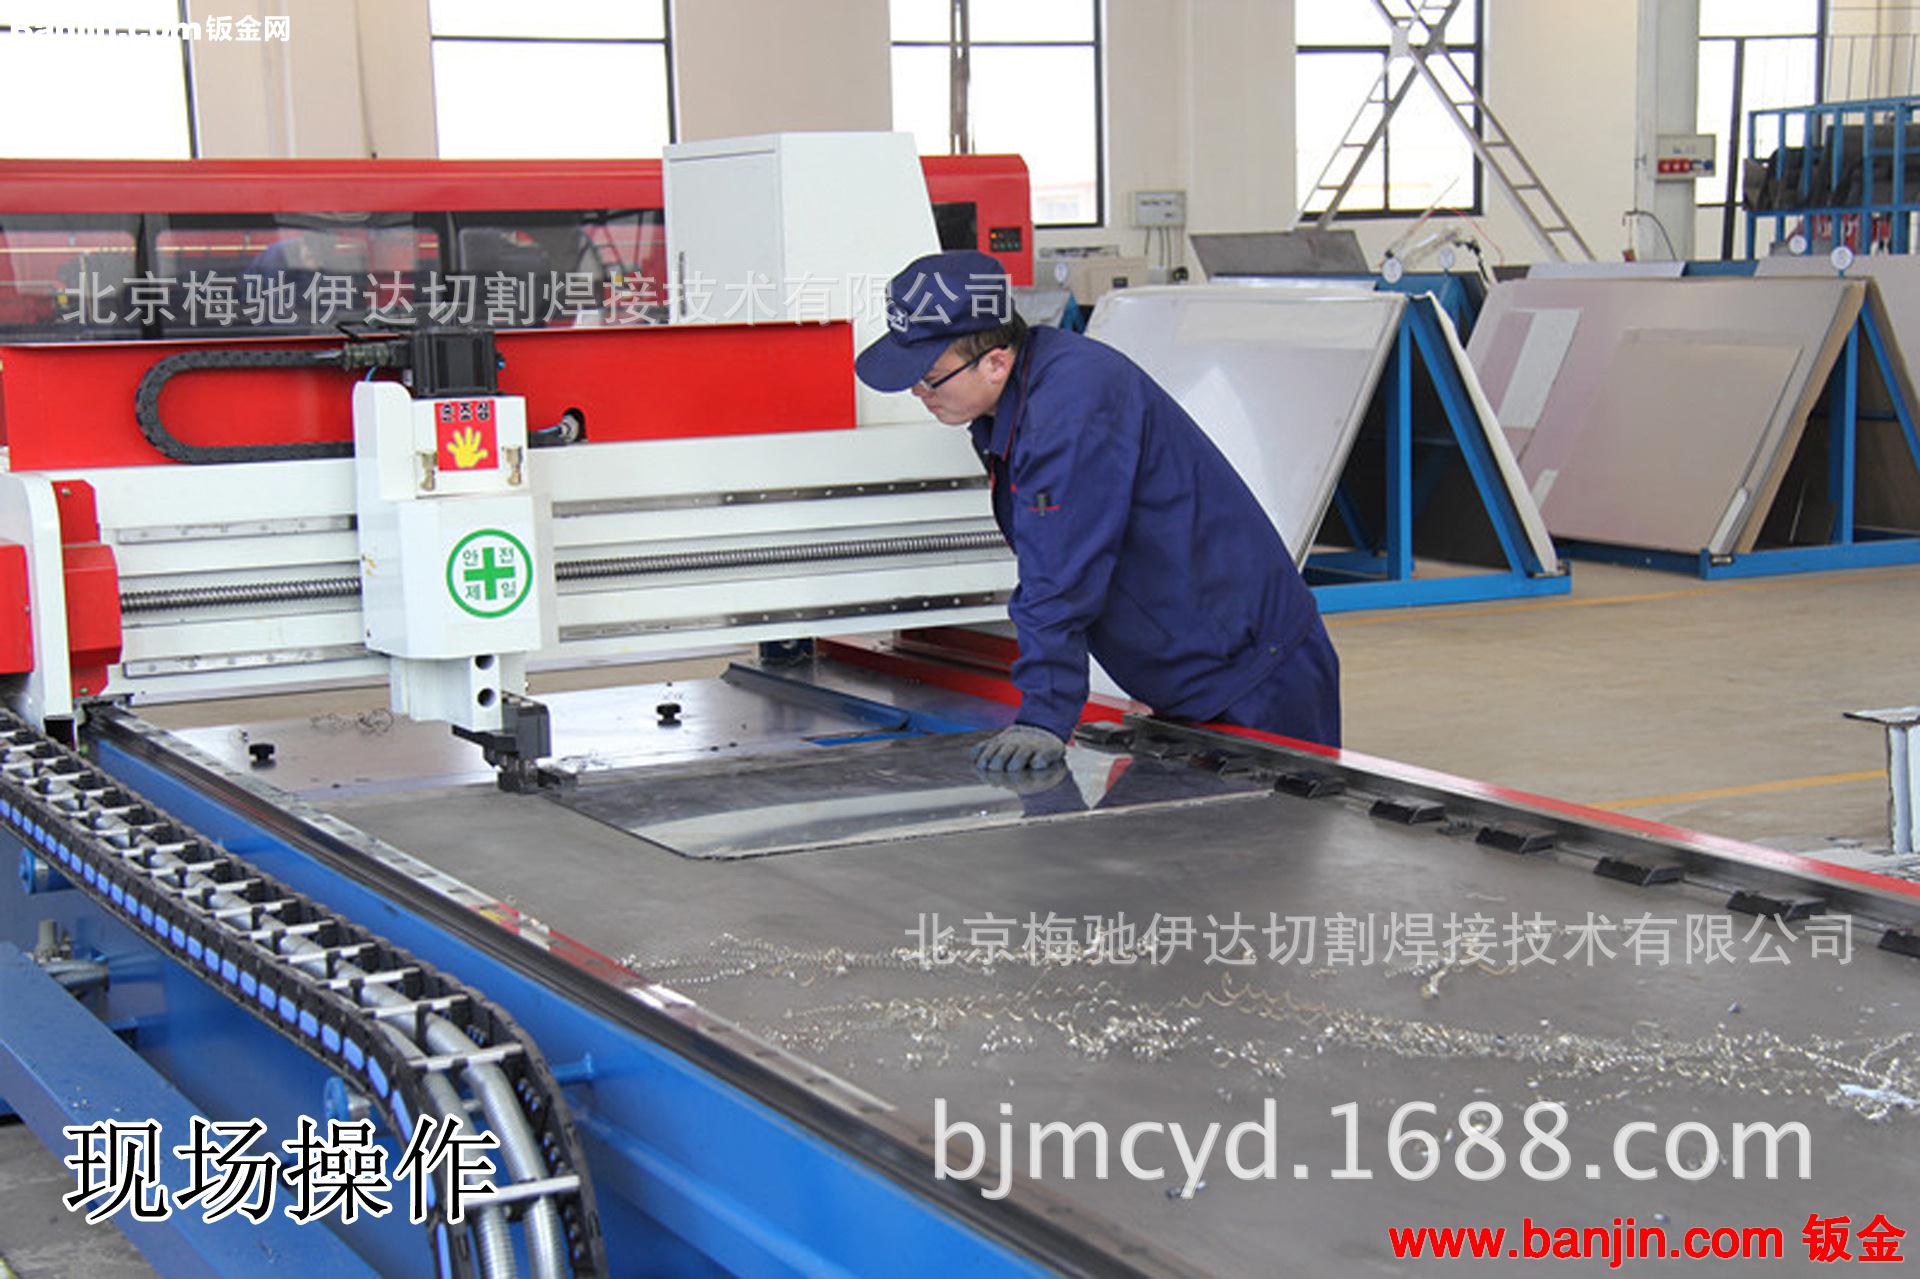 北京机箱加工厂家 供应电子机柜 网络机柜 非标机柜质量好价格低